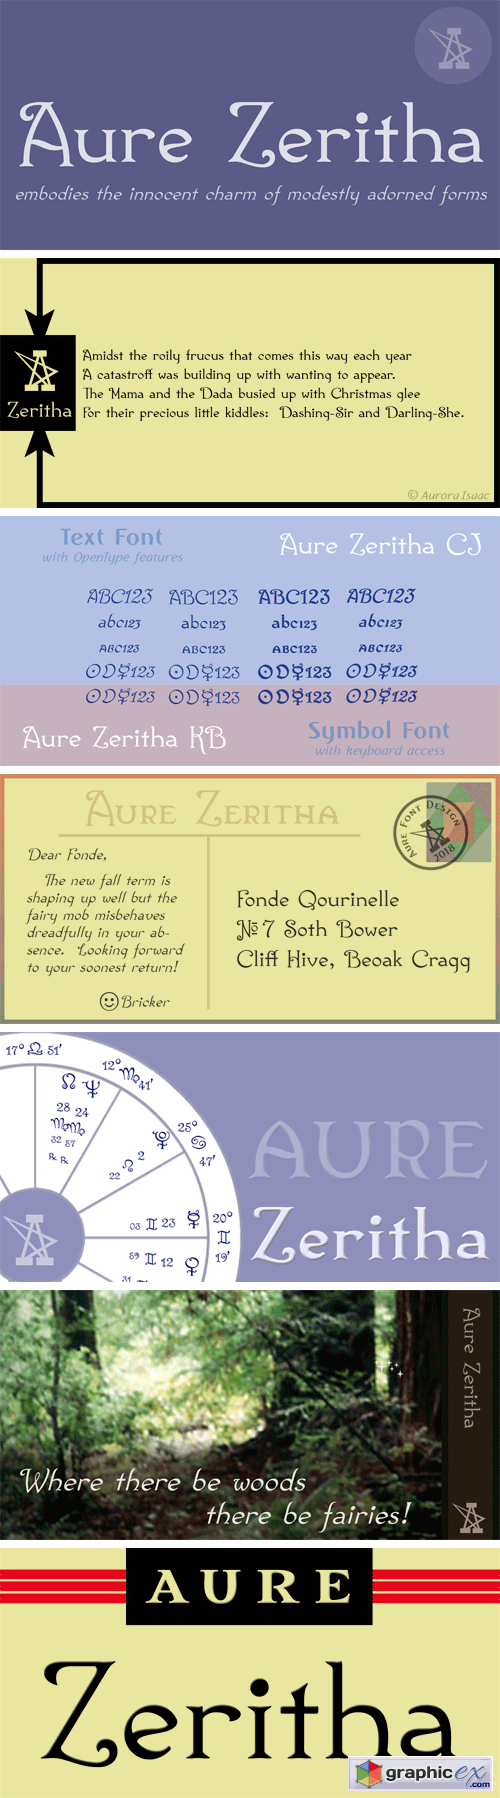 Aure Zeritha Font Family